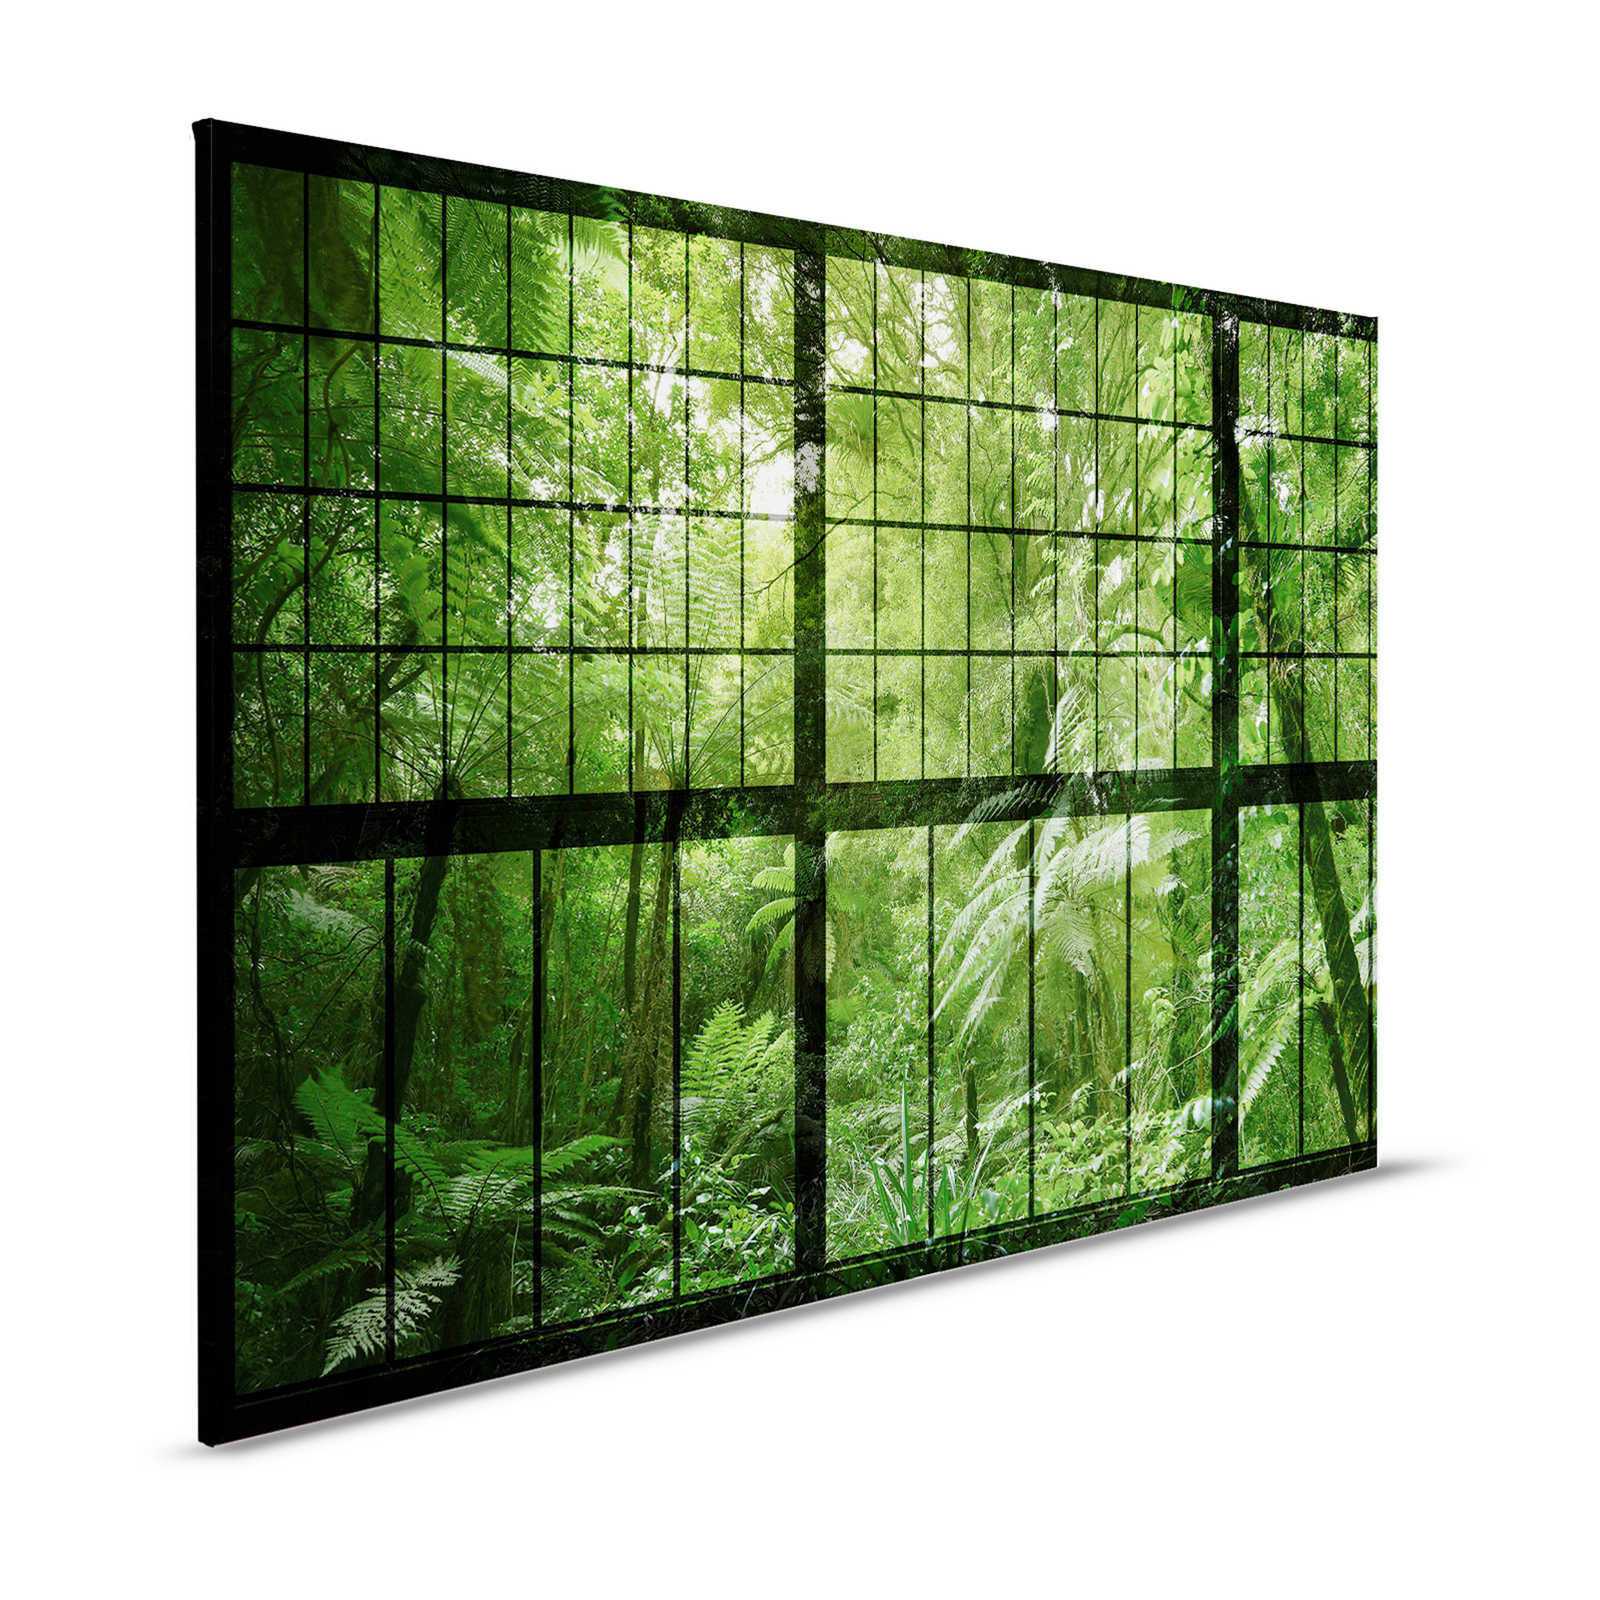 Rainforest 2 - Loft Raam Canvas Schilderij met Uitzicht op de Jungle - 1.20 m x 0.80 m
